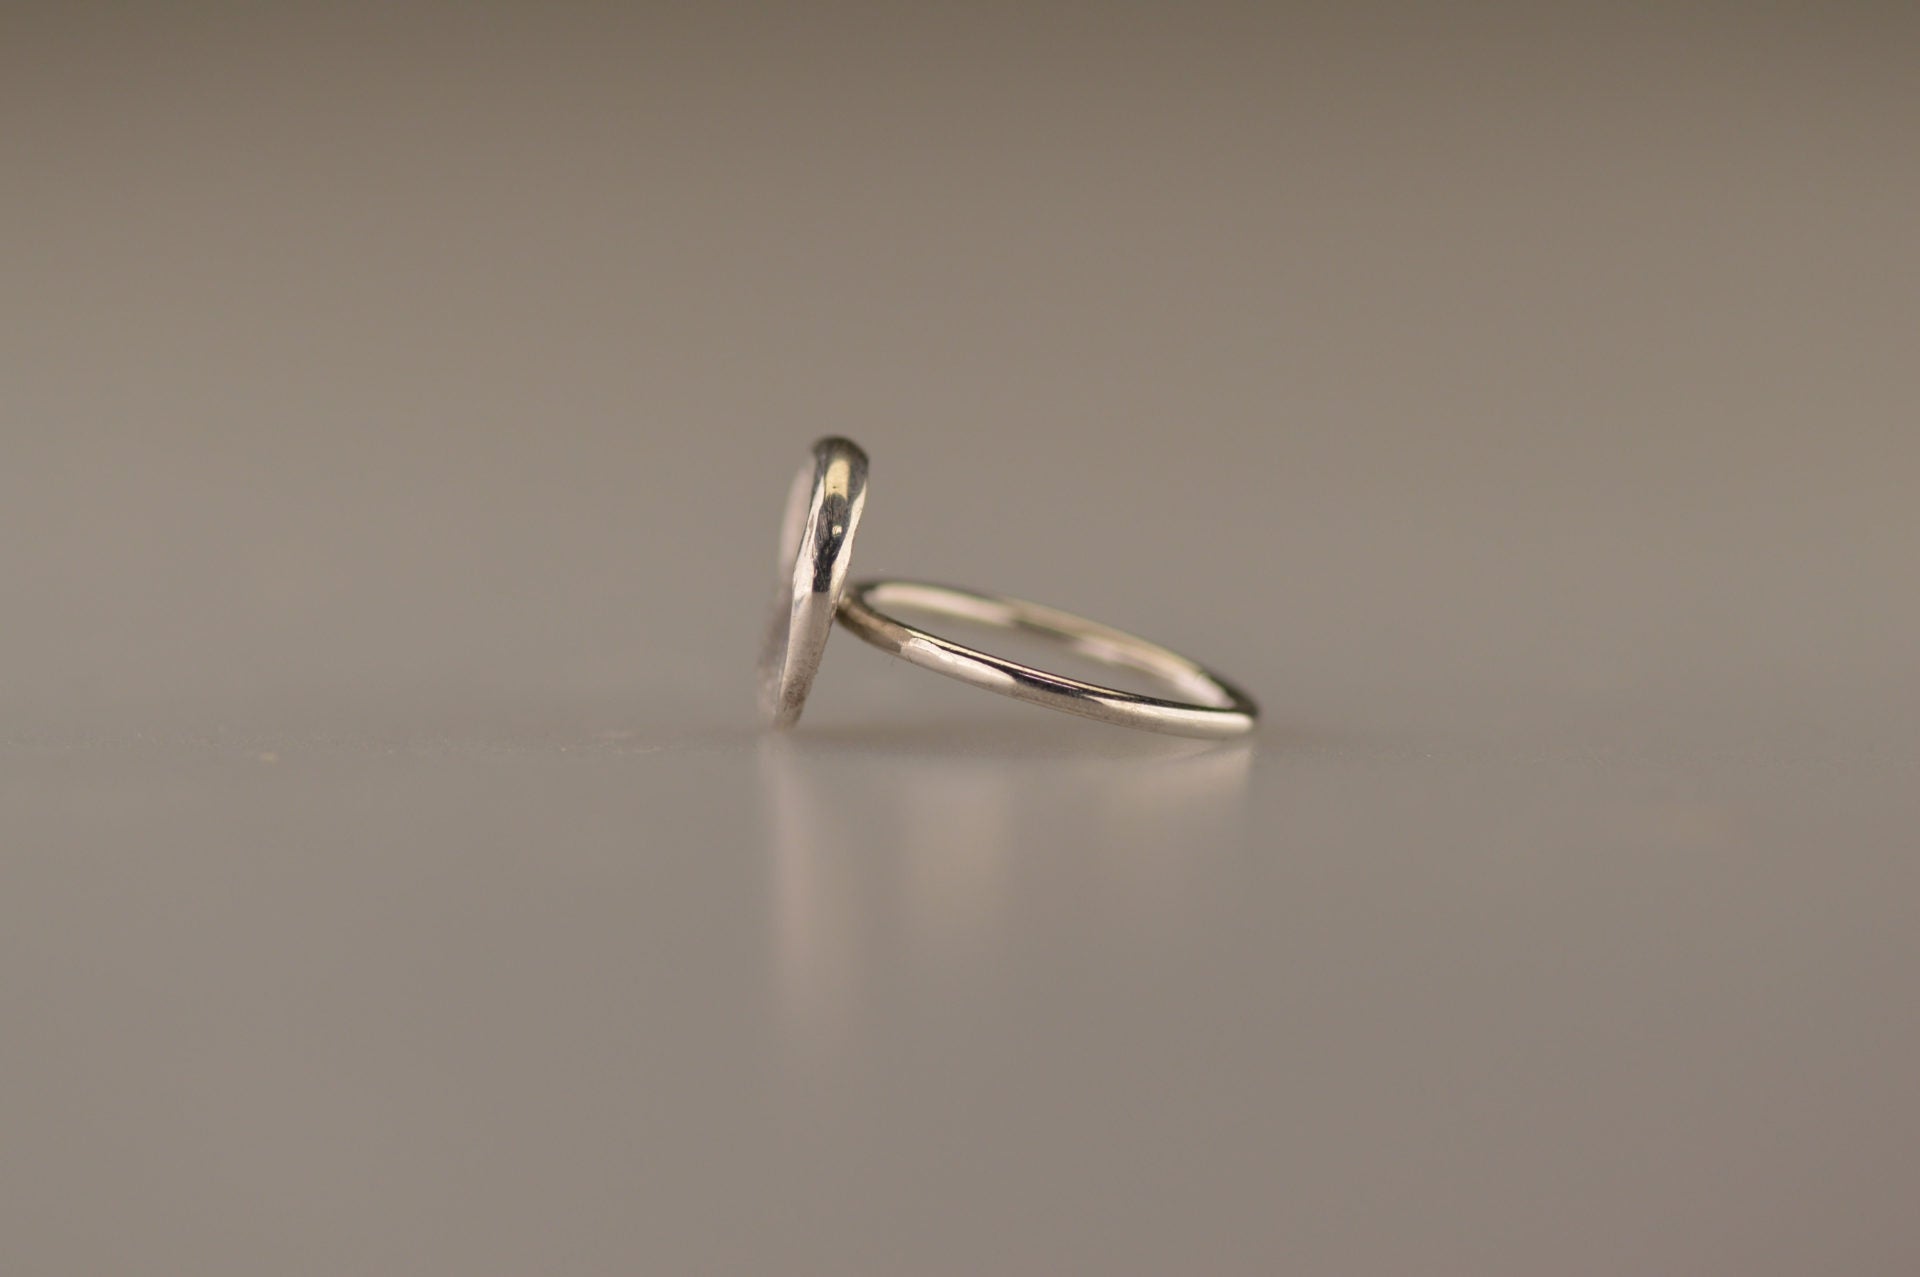 Gouden ring 1.6 mm breed met een iets hollend rond vlak aan de bovenzijde voorzien van een natuurlijke zilveren vingerafdruk. Alle